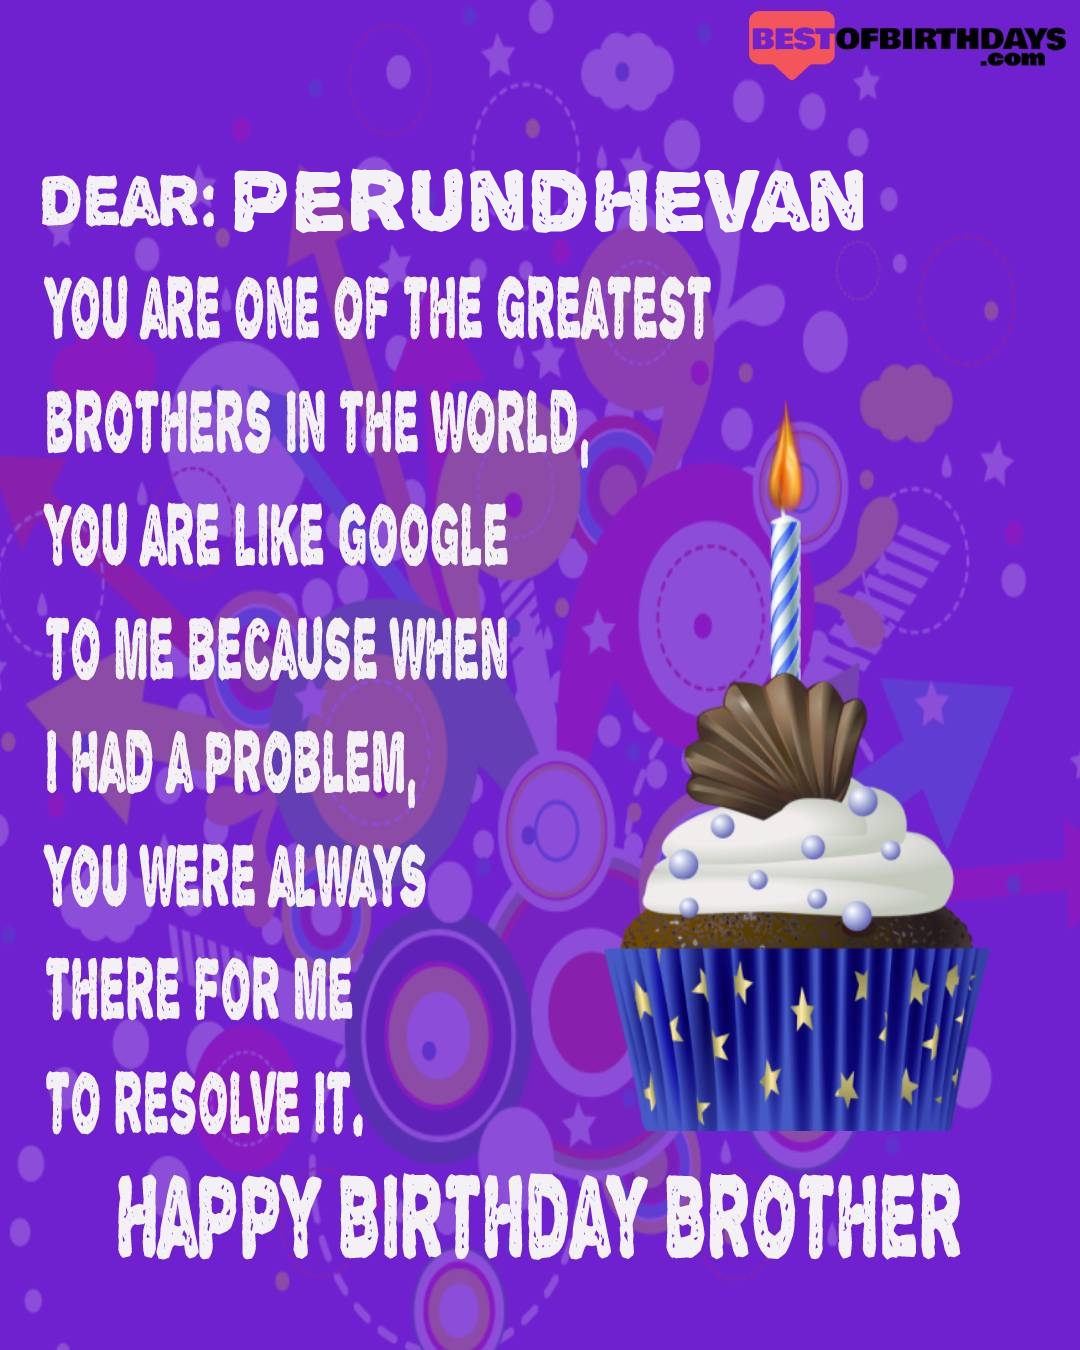 Happy birthday perundhevan bhai brother bro